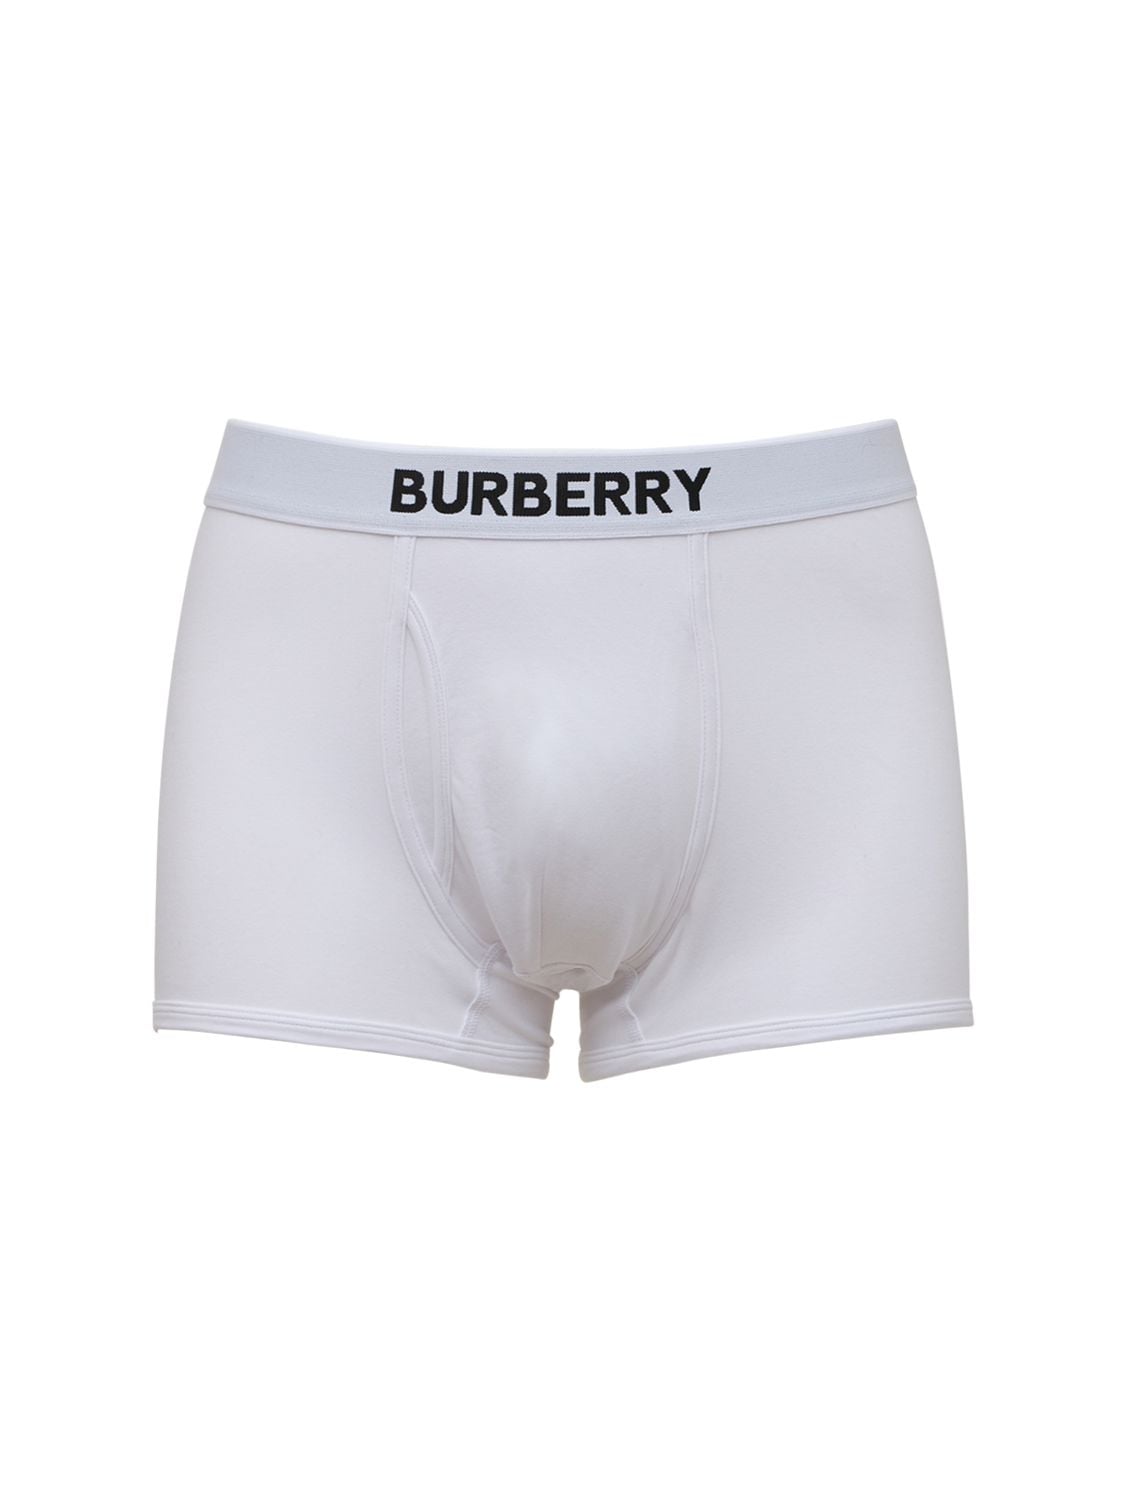 Truro Cotton Jersey Boxer Briefs - BURBERRY - Modalova